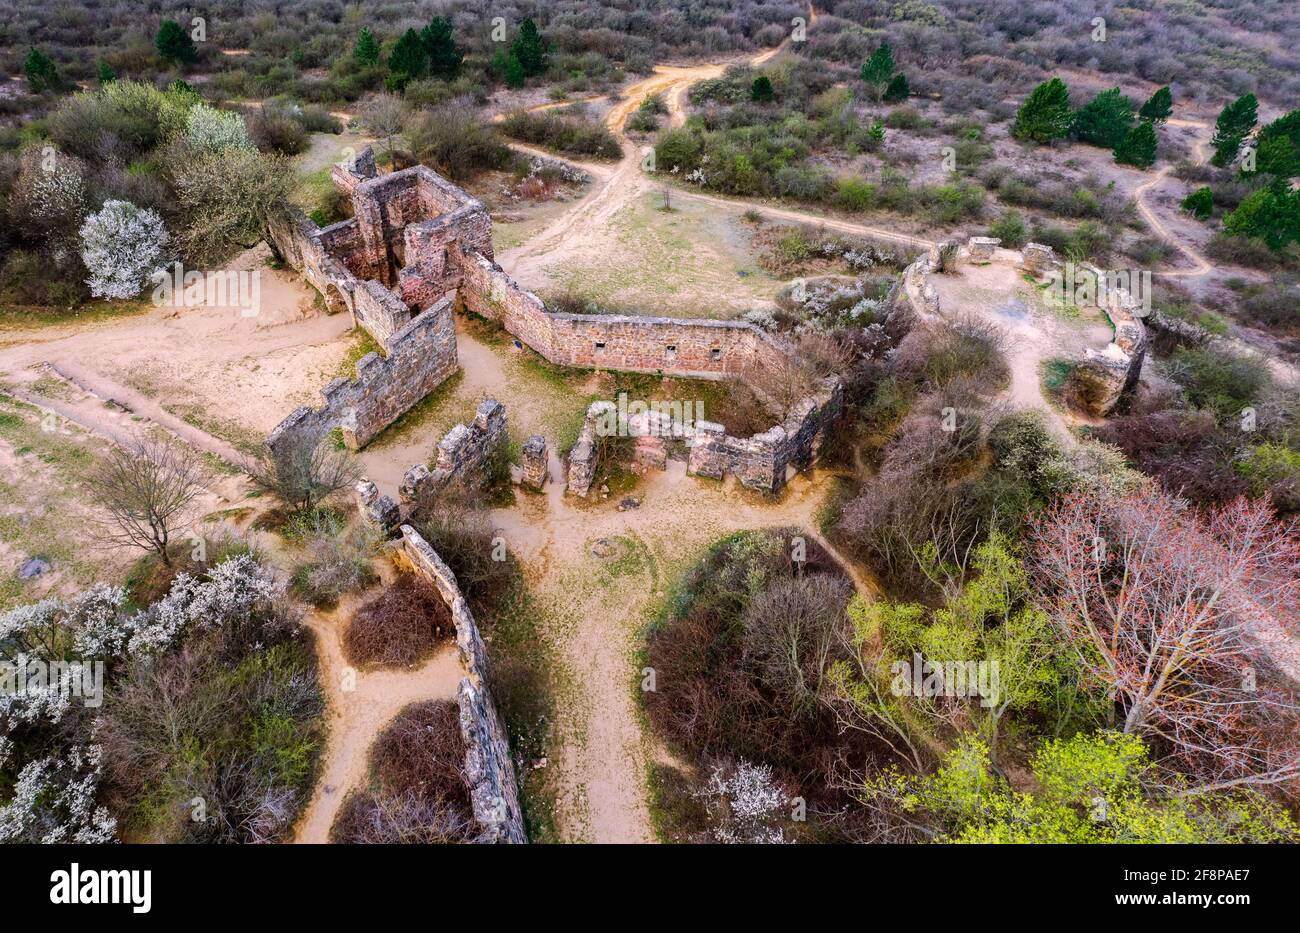 Diese Ruinen sind die Burg von Eger Kopie. Gemacht für die historischen ungarischen Filmaufnahmen. Der Film ist die siegle von Schloss Eger. Stockfoto